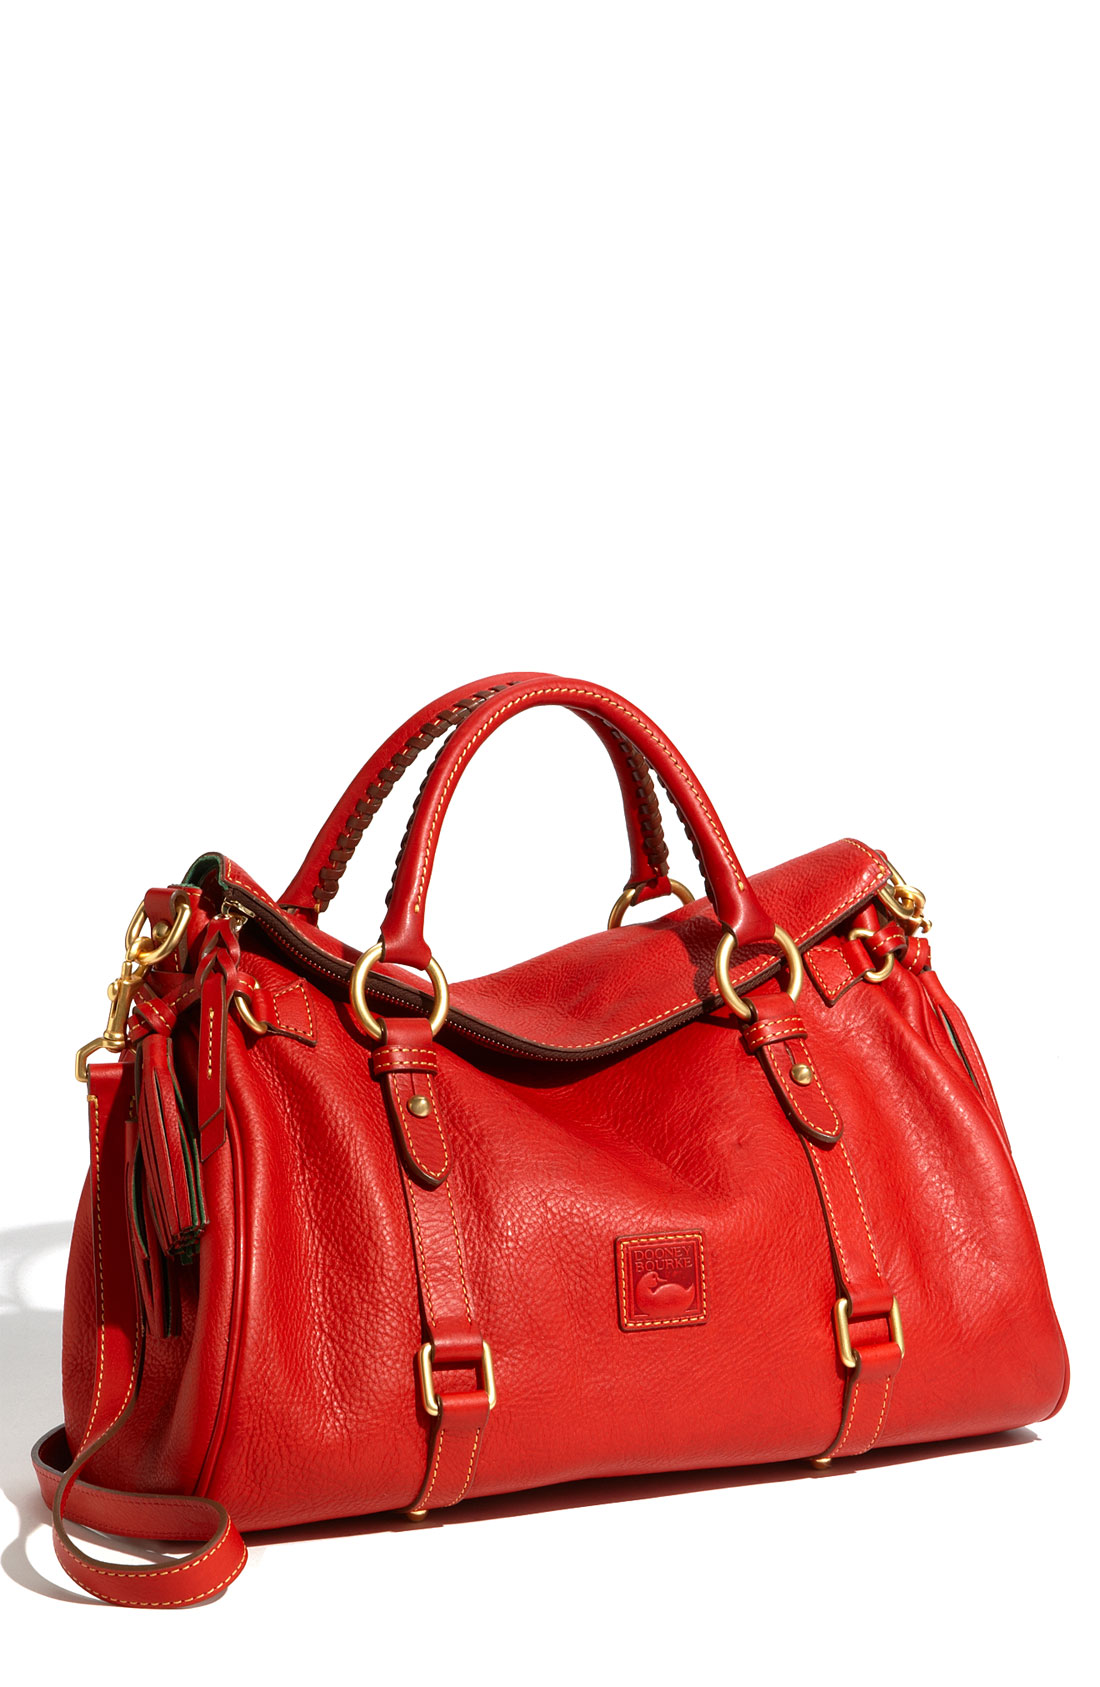 Dooney & Bourke Florentine Vachetta Leather Satchel in Red | Lyst